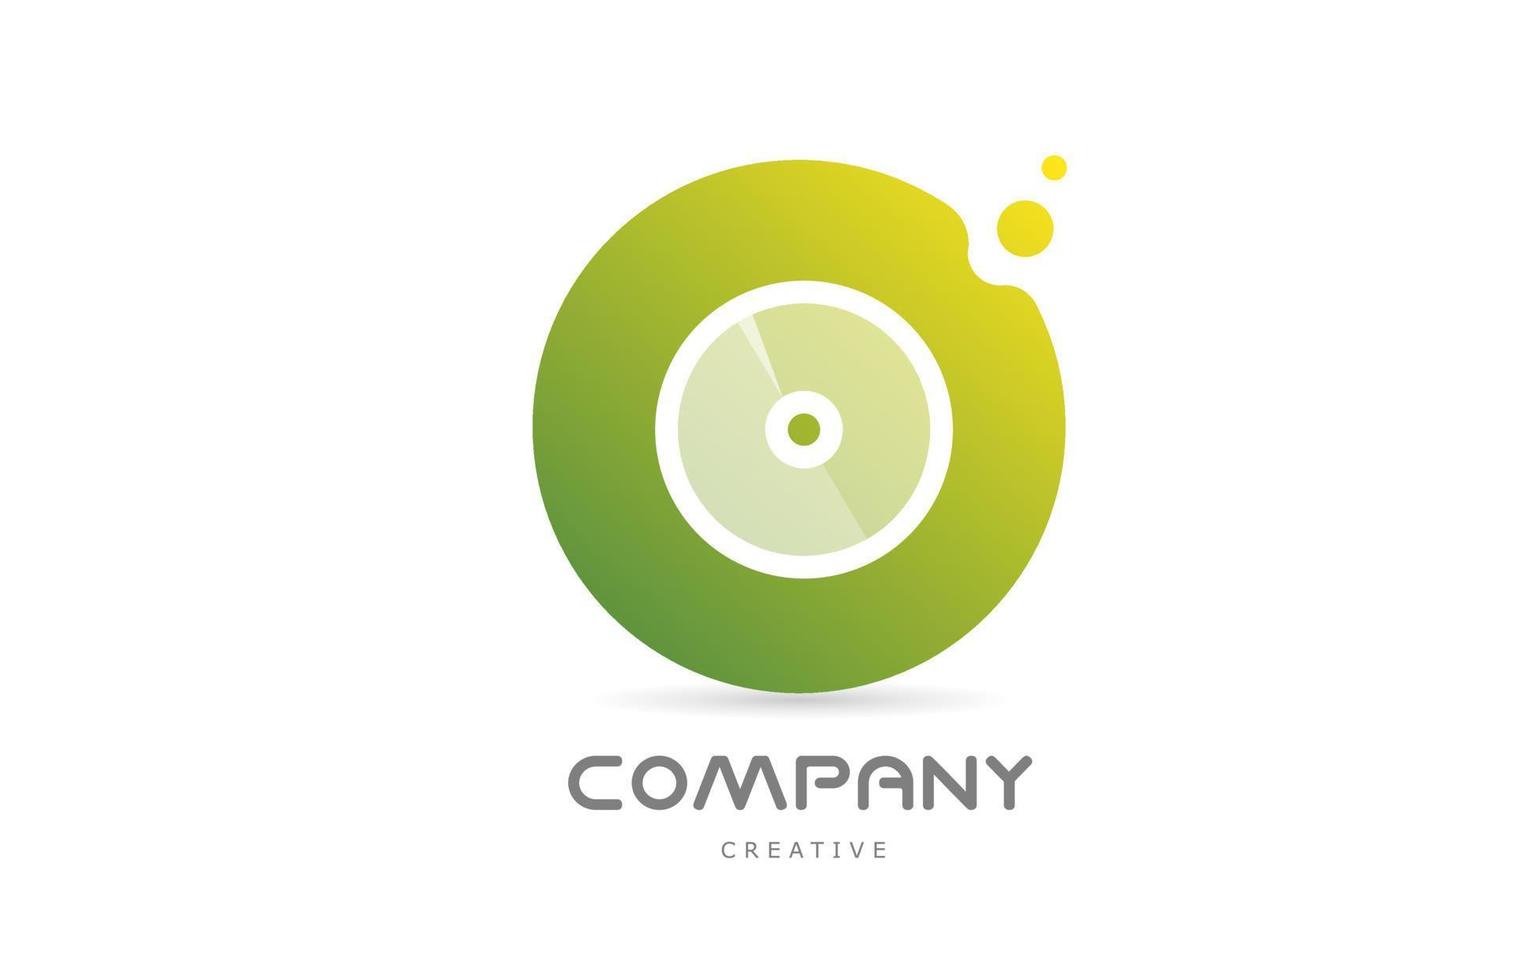 puntos verdes o icono del logotipo de la letra del alfabeto con transparencia blanca. plantilla creativa para negocios vector